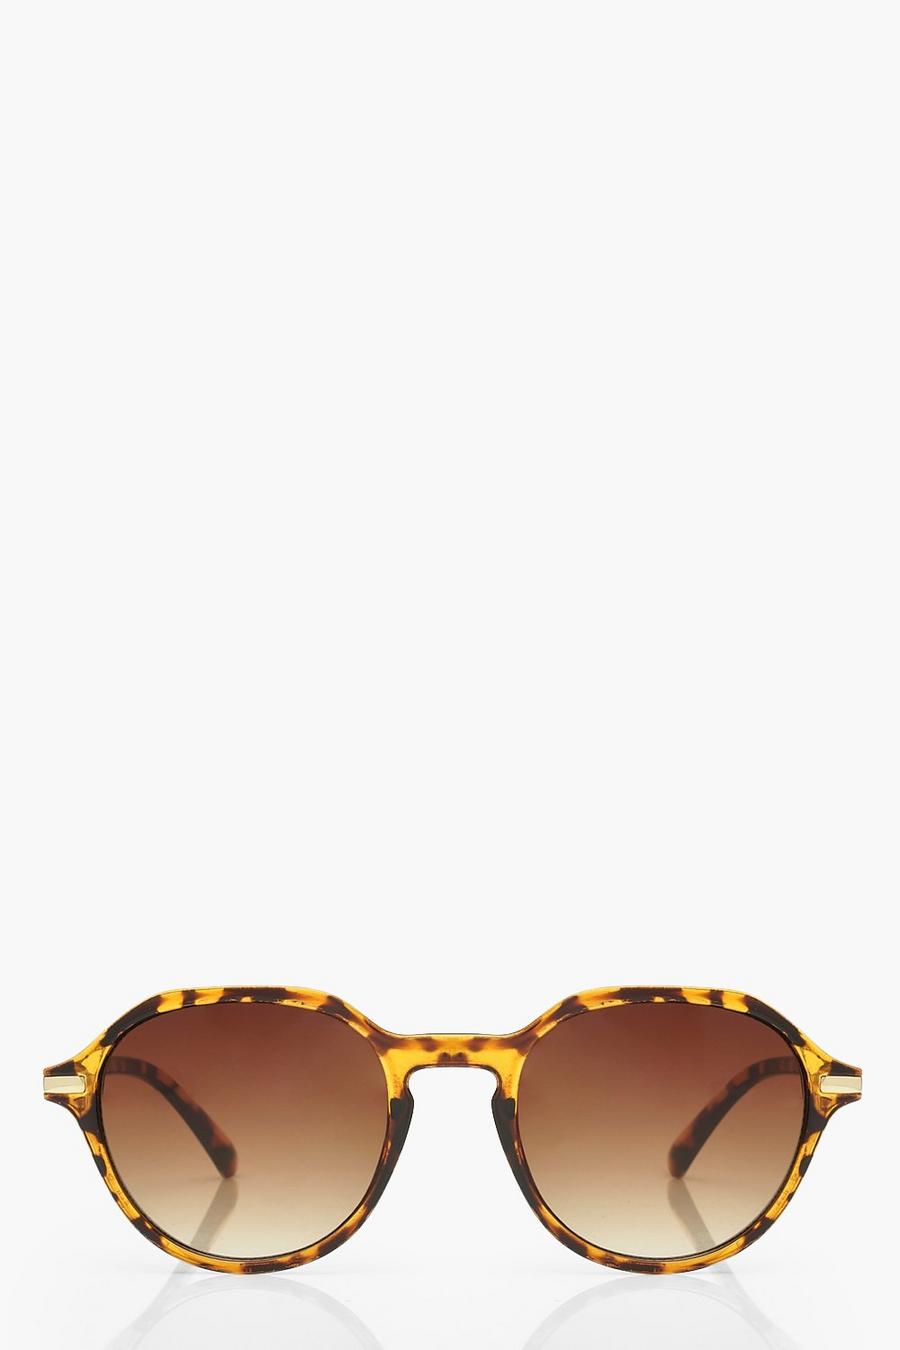 Brown Tortoiseshell Round Sunglasses image number 1